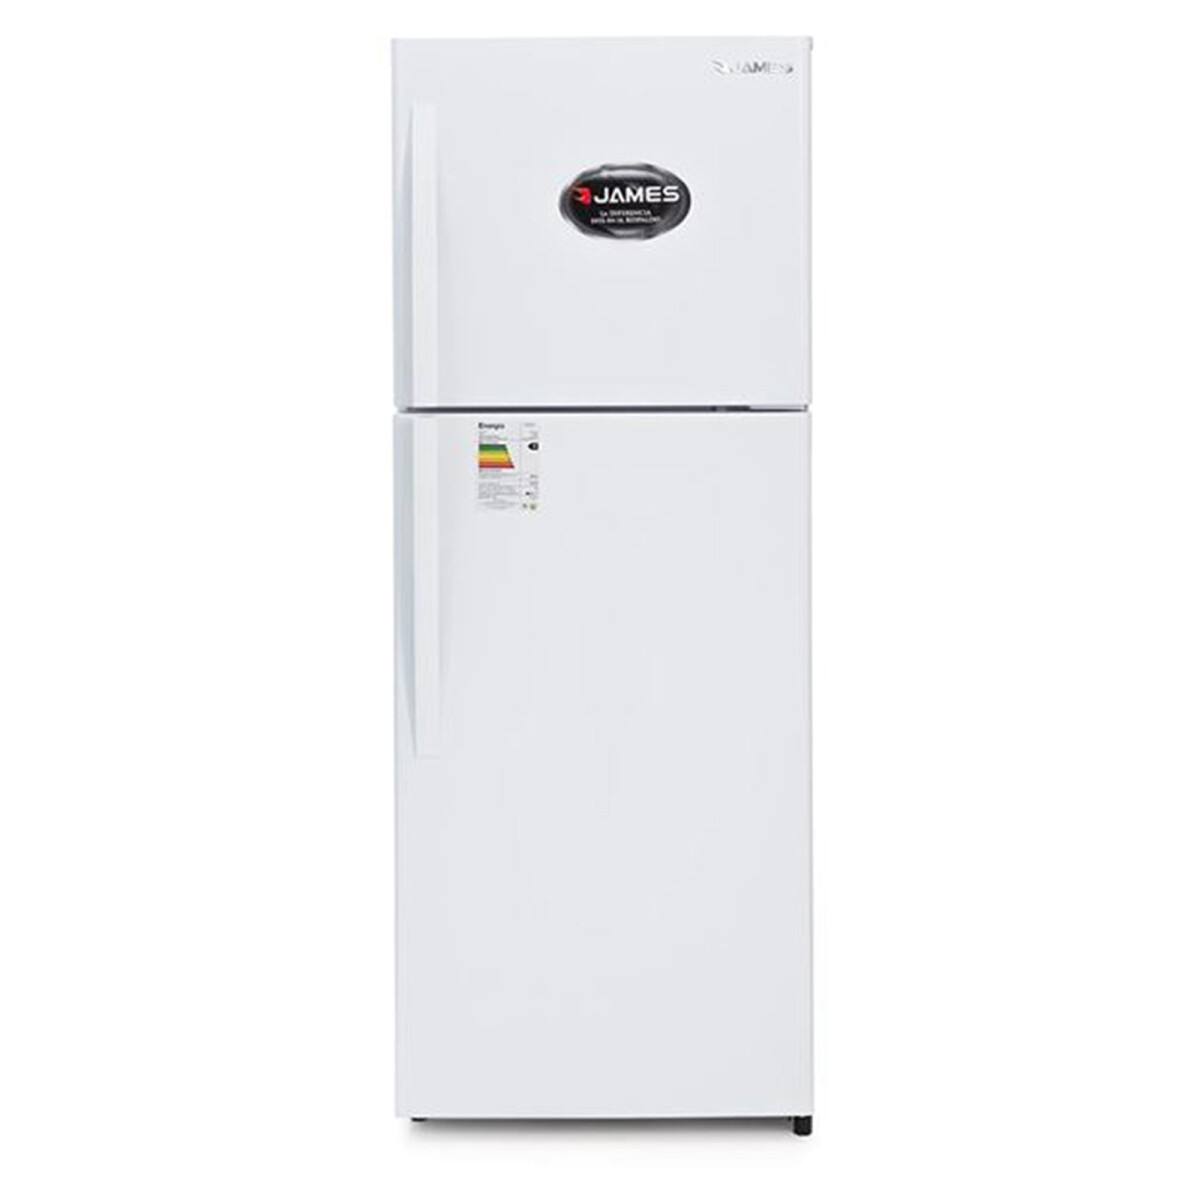 Refrigerador James J501 Inv Bco Disc 